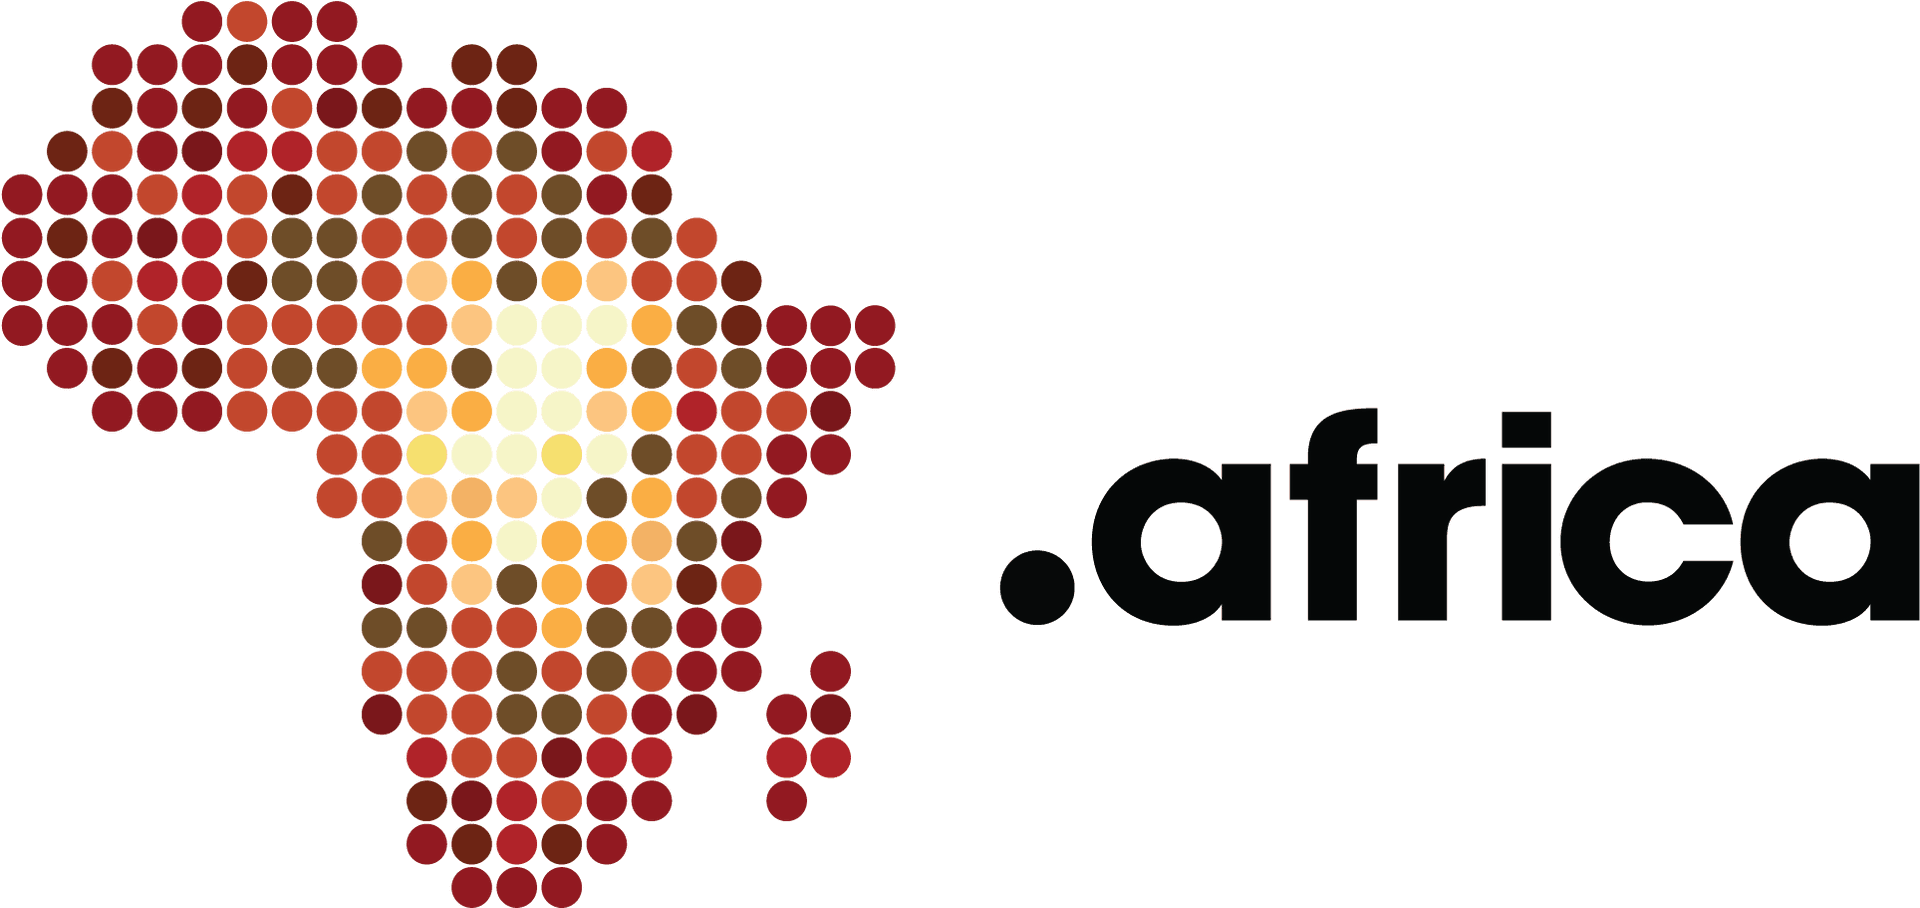 Dot Africa Logo Design PNG image